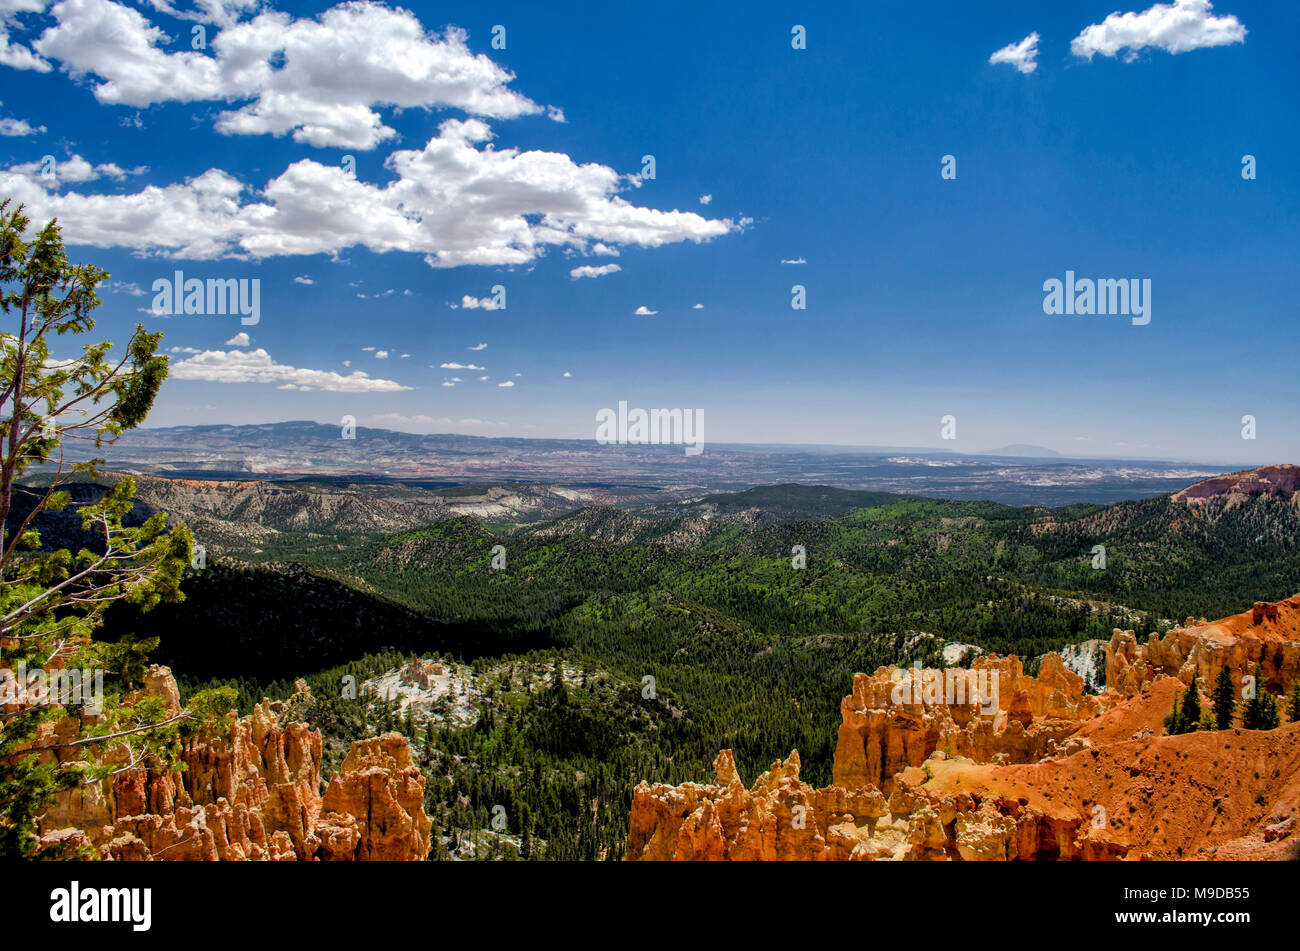 Un panorama des formations de roche de grès d'orange et de falaises avec une vallée verte ci-dessous sous un ciel bleu avec des nuages blancs moelleux. Banque D'Images